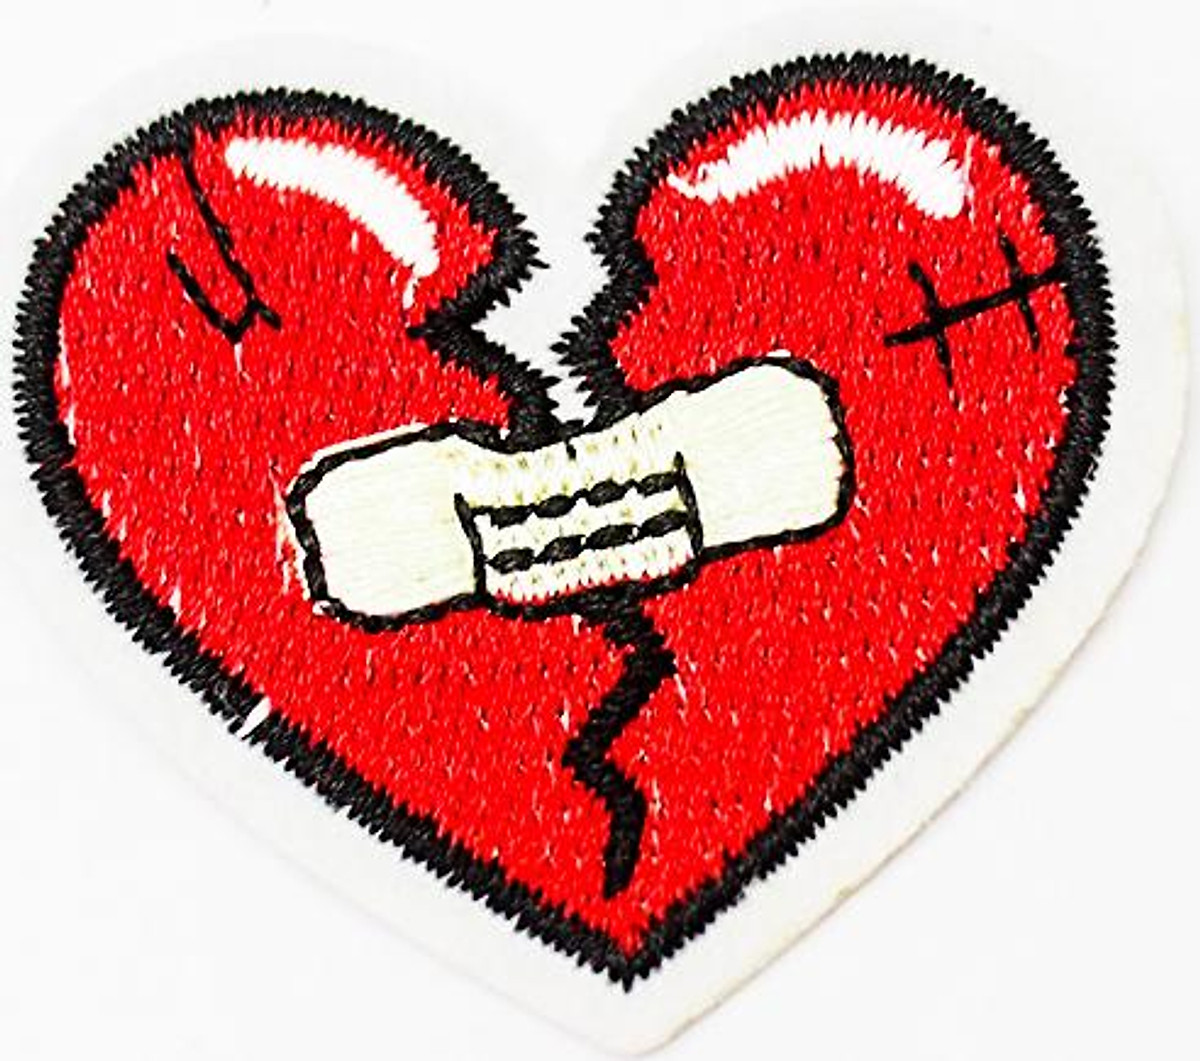 Trái tim đỏ dán băng keo: Một hình ảnh đầy ý nghĩa, thể hiện một trái tim đã gặp khó khăn và bị thương tổn, nhưng vẫn cố gắng để tự tổn thương. Hãy khám phá tinh thần chiến đấu không nản đối với những trở ngại của trái tim trong bức ảnh này.